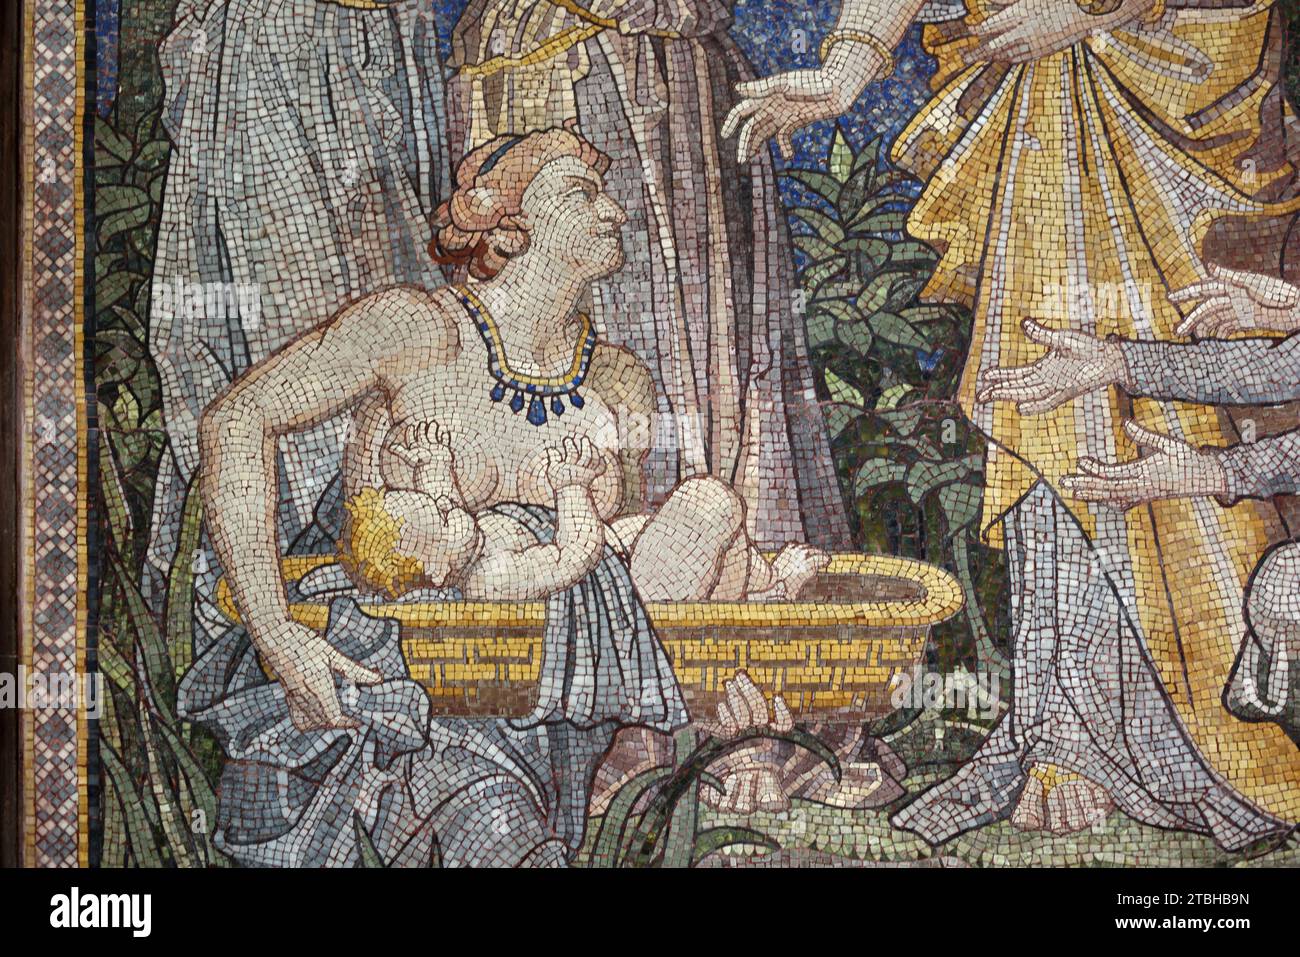 Ritrovamento di Mosè nel fiume Nilo da parte della figlia del faraone dal Libro dell'Esodo. Wall Mosaic nella Cattedrale di Chester Inghilterra Regno Unito Foto Stock